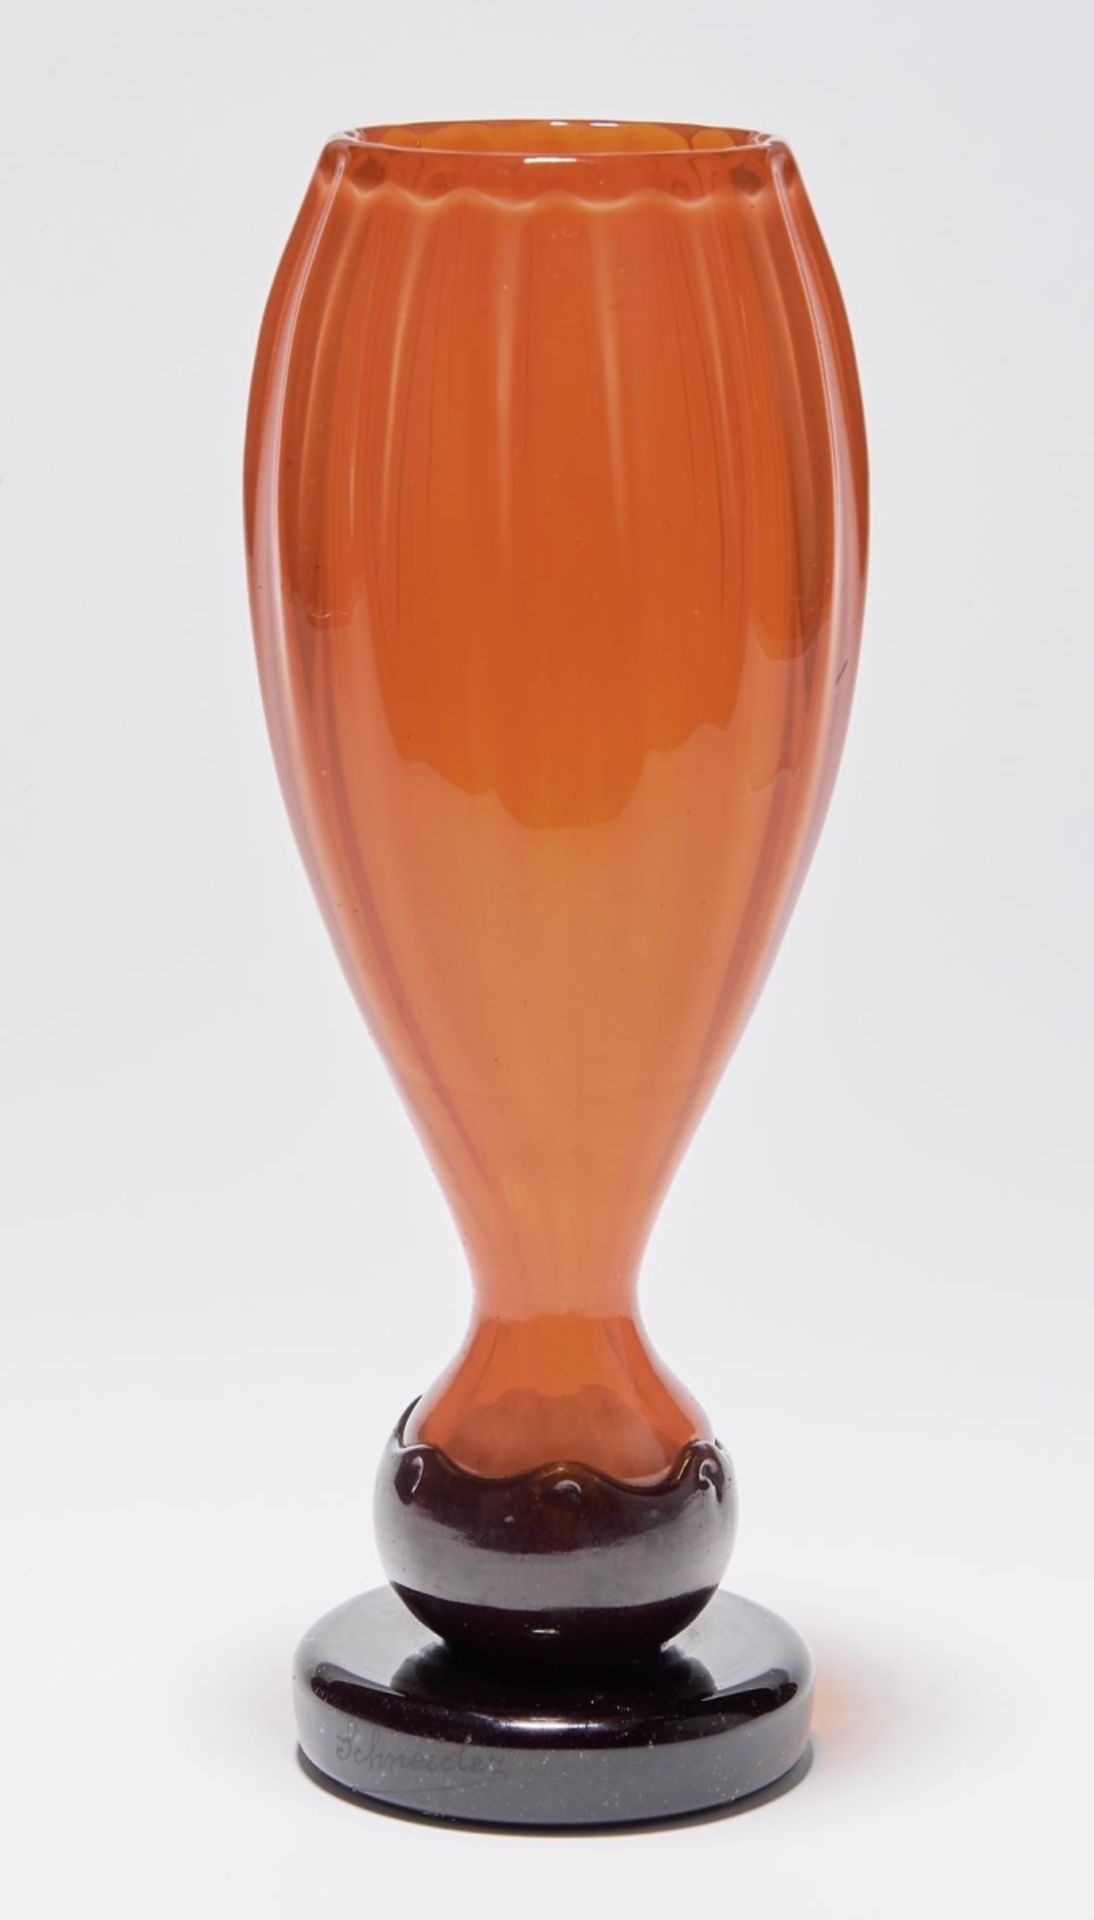 Vase "Filetés", Verreries Schneider, Epinay-sur-Seine - 1922-25